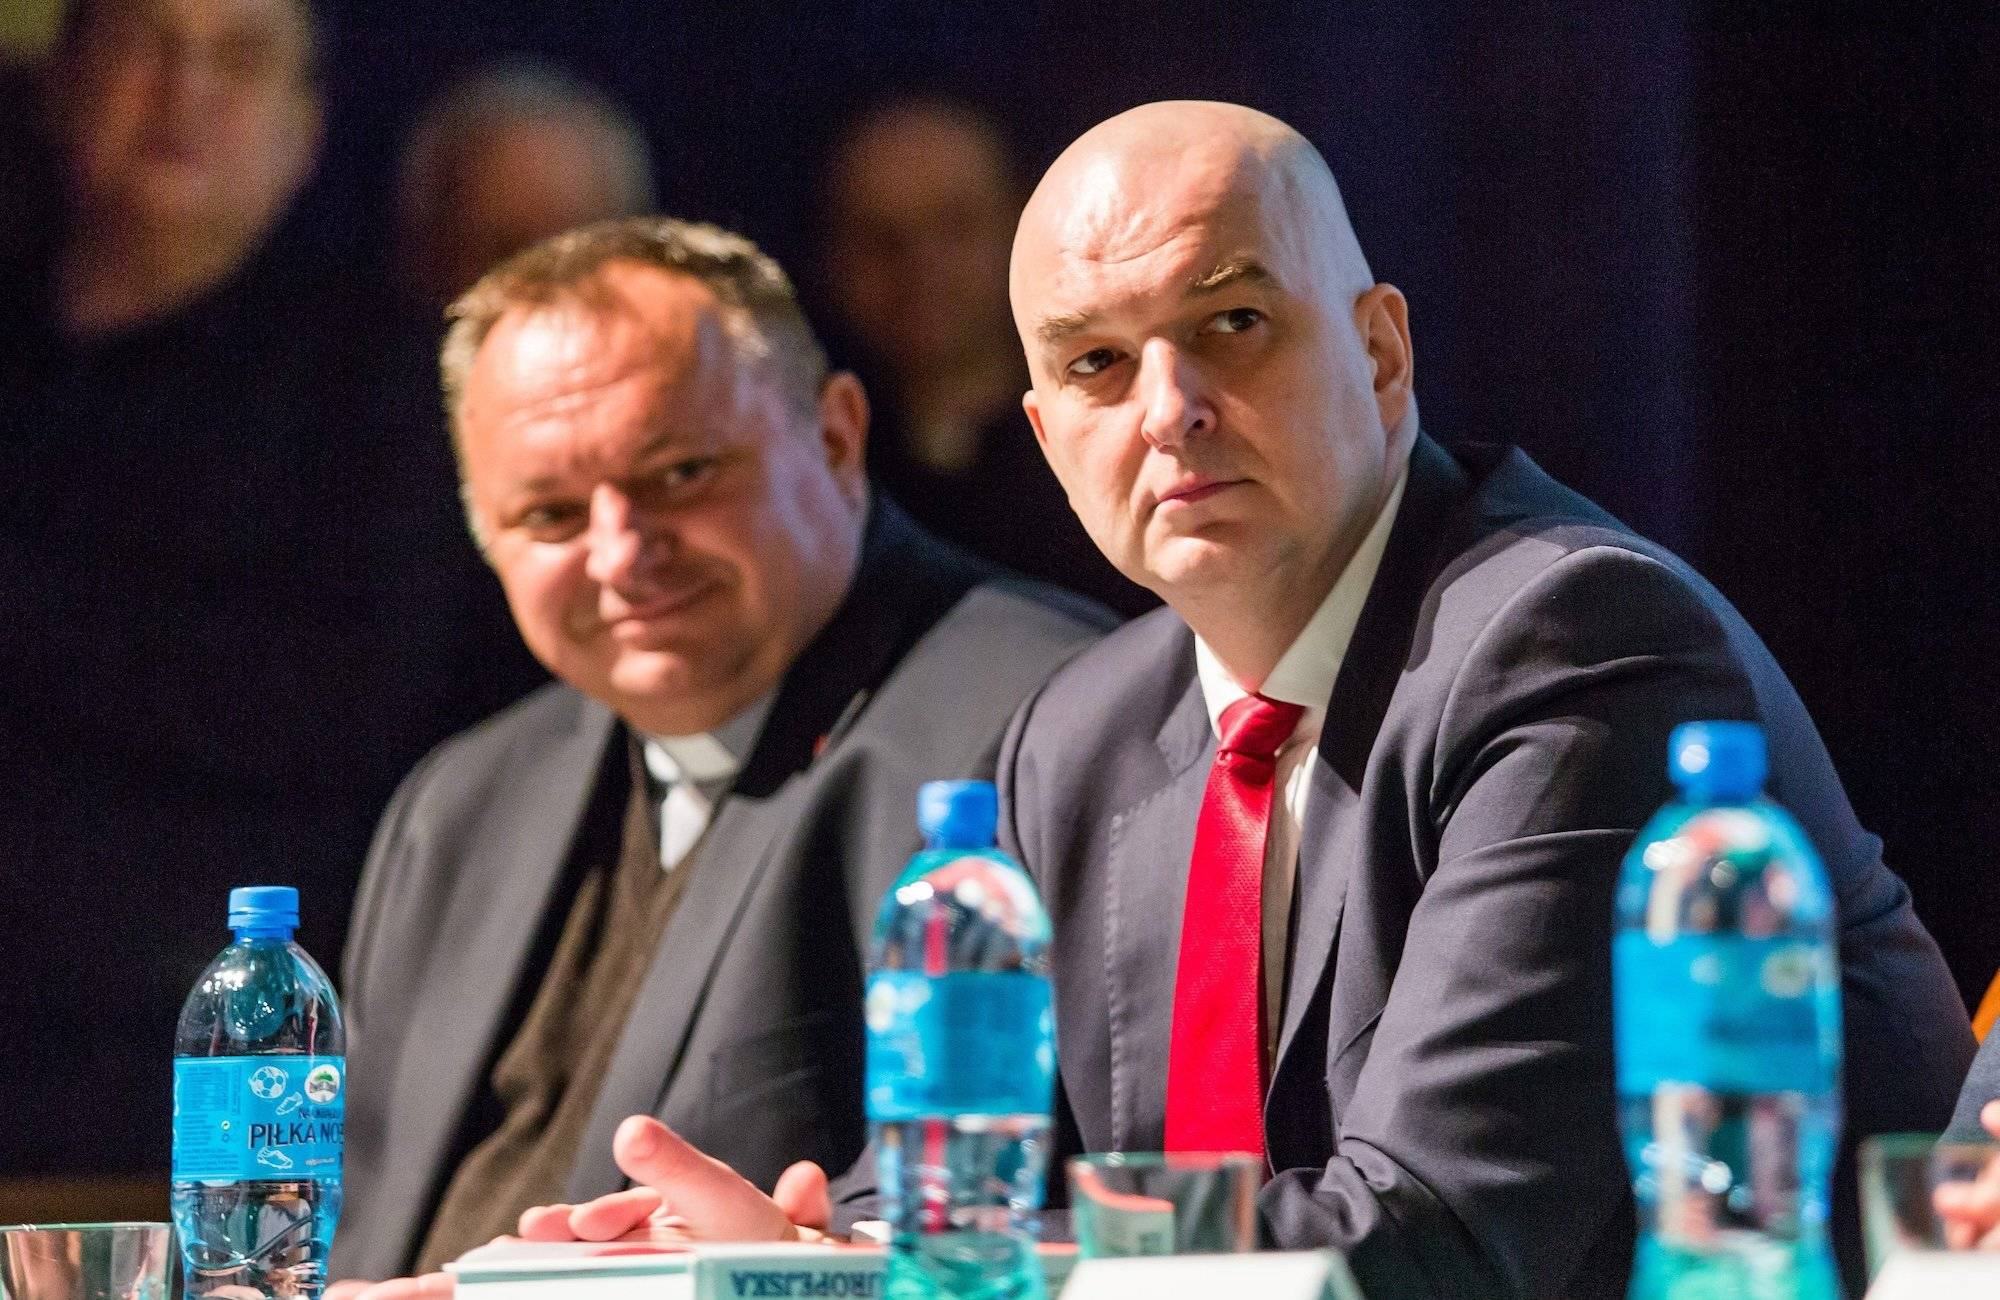 Sławomir Dębski w ciemnym garniturze i czerwonym krawacie siedzi przy stole podczas konferencji. Obok niego ks. Waldemar Cisło.